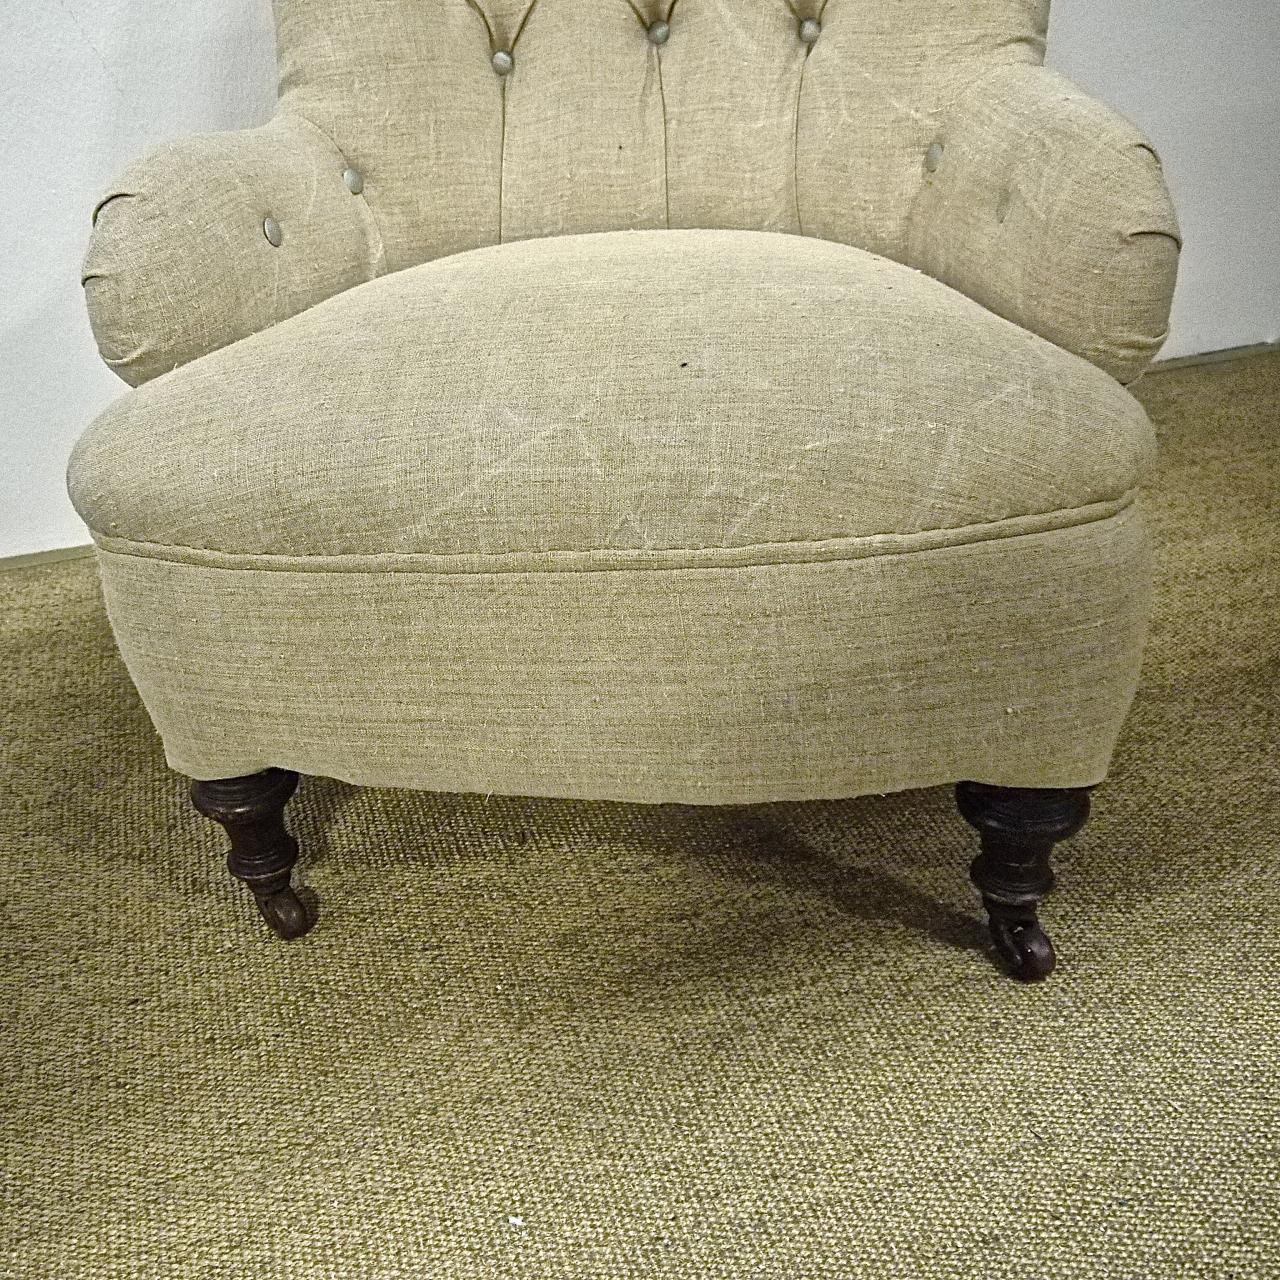 English Armchair Linen Upholstery Victorian, 19th Century (19. Jahrhundert)